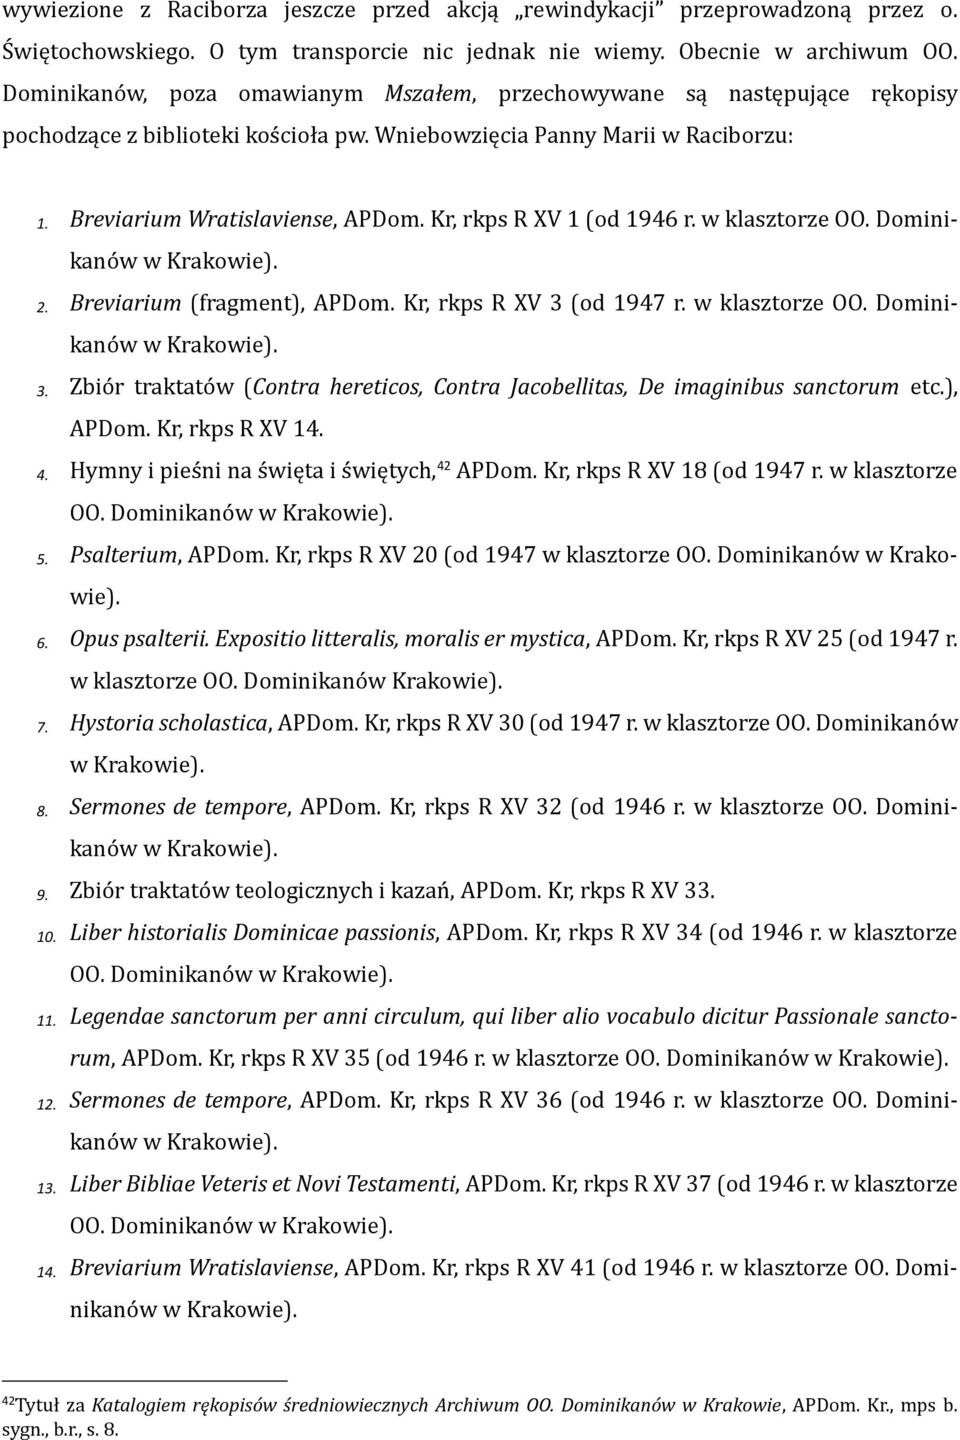 Kr, rkps R XV 1 (od 1946 r. w klasztorze OO. Dominikanów w Krakowie). 2. Breviarium (fragment), APDom. Kr, rkps R XV 3 